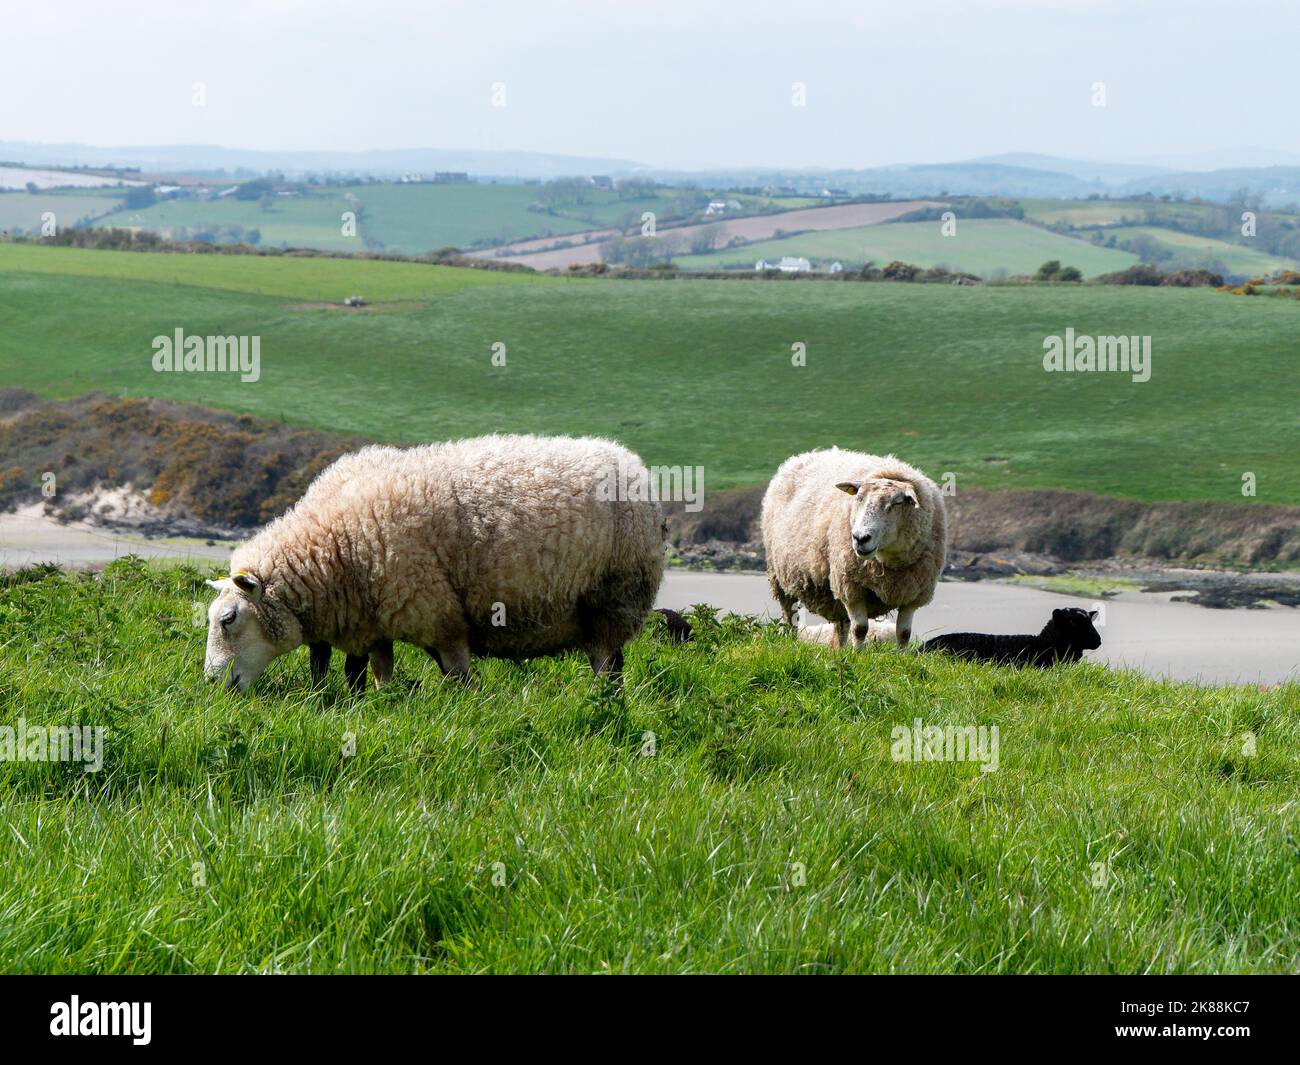 Les moutons se broutent dans un pré vert. Quelques brebis dans un pâturage de fermier. Pâturage libre du bétail. Paysage agricole. Banque D'Images